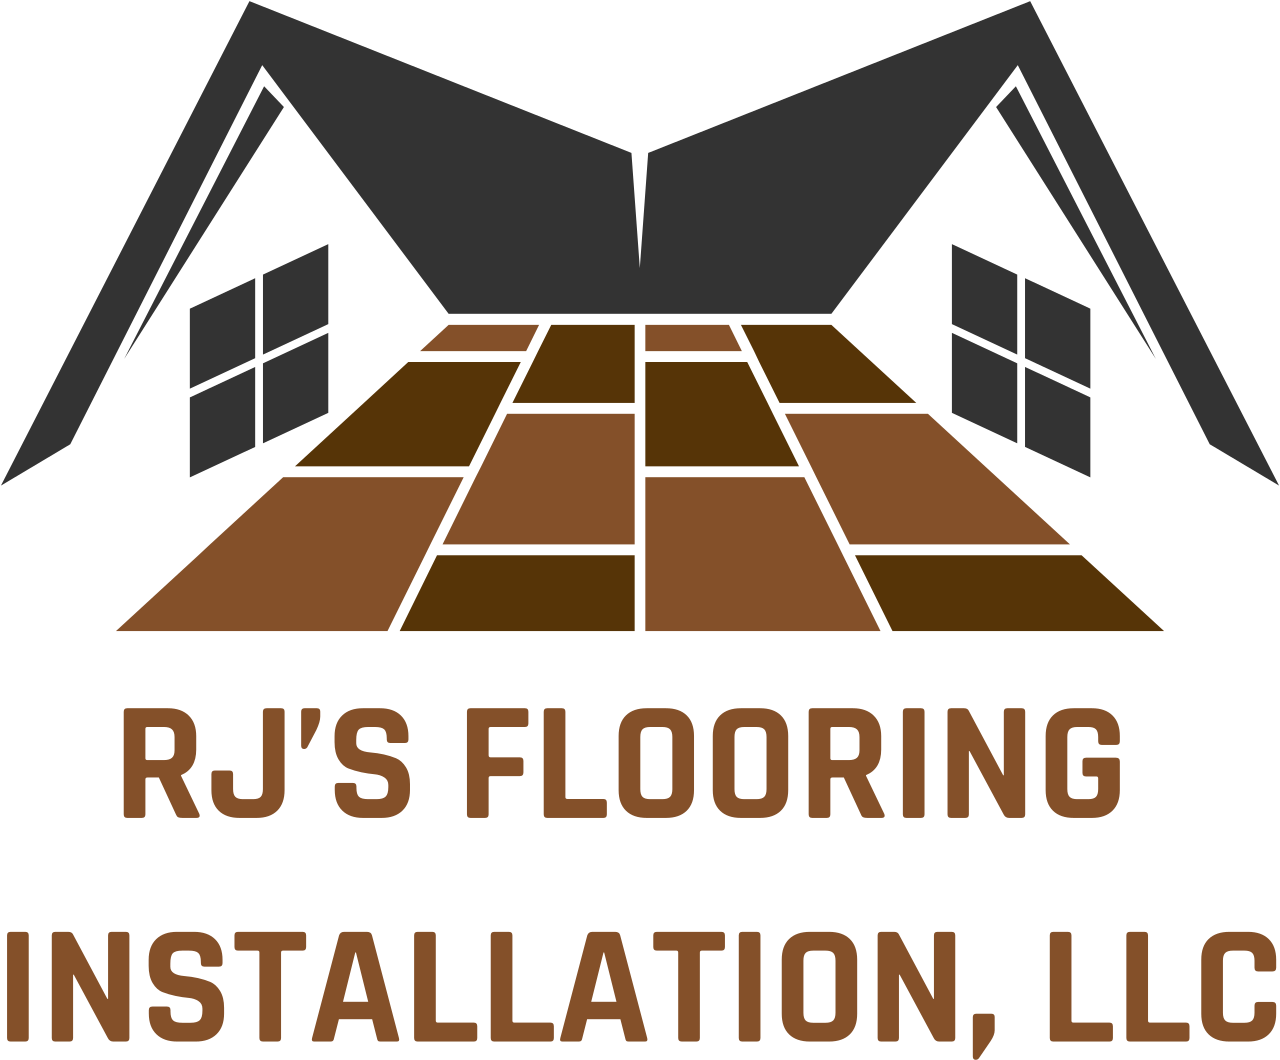 RJ’s Flooring Installation, LLC's logo